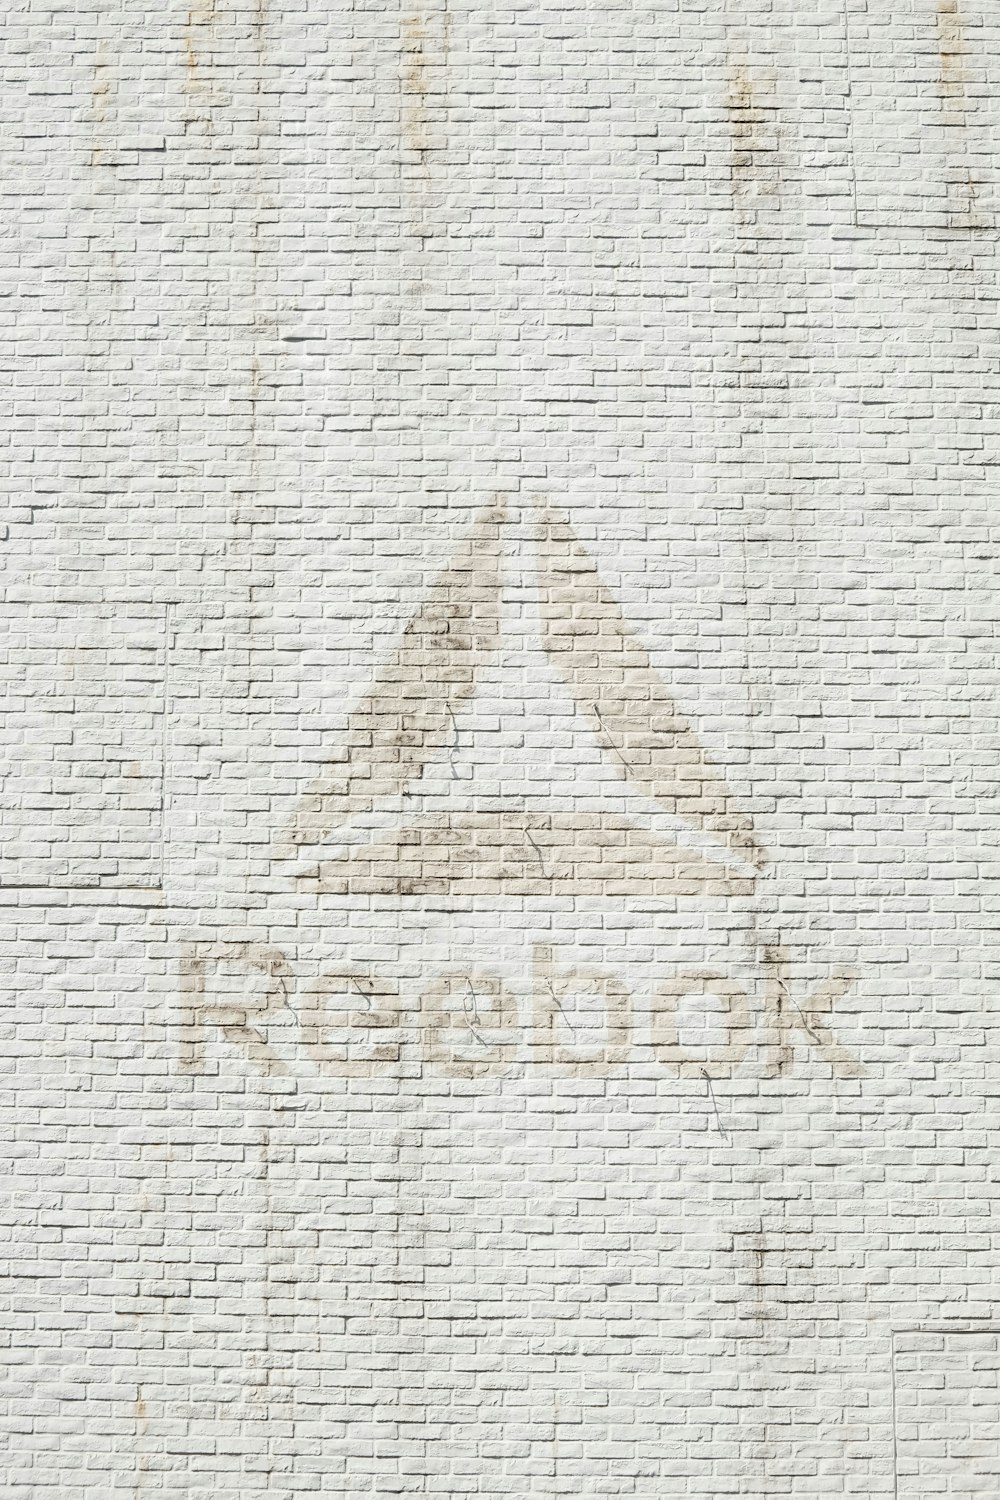 foto de primer plano del logotipo de Reebok en la pared